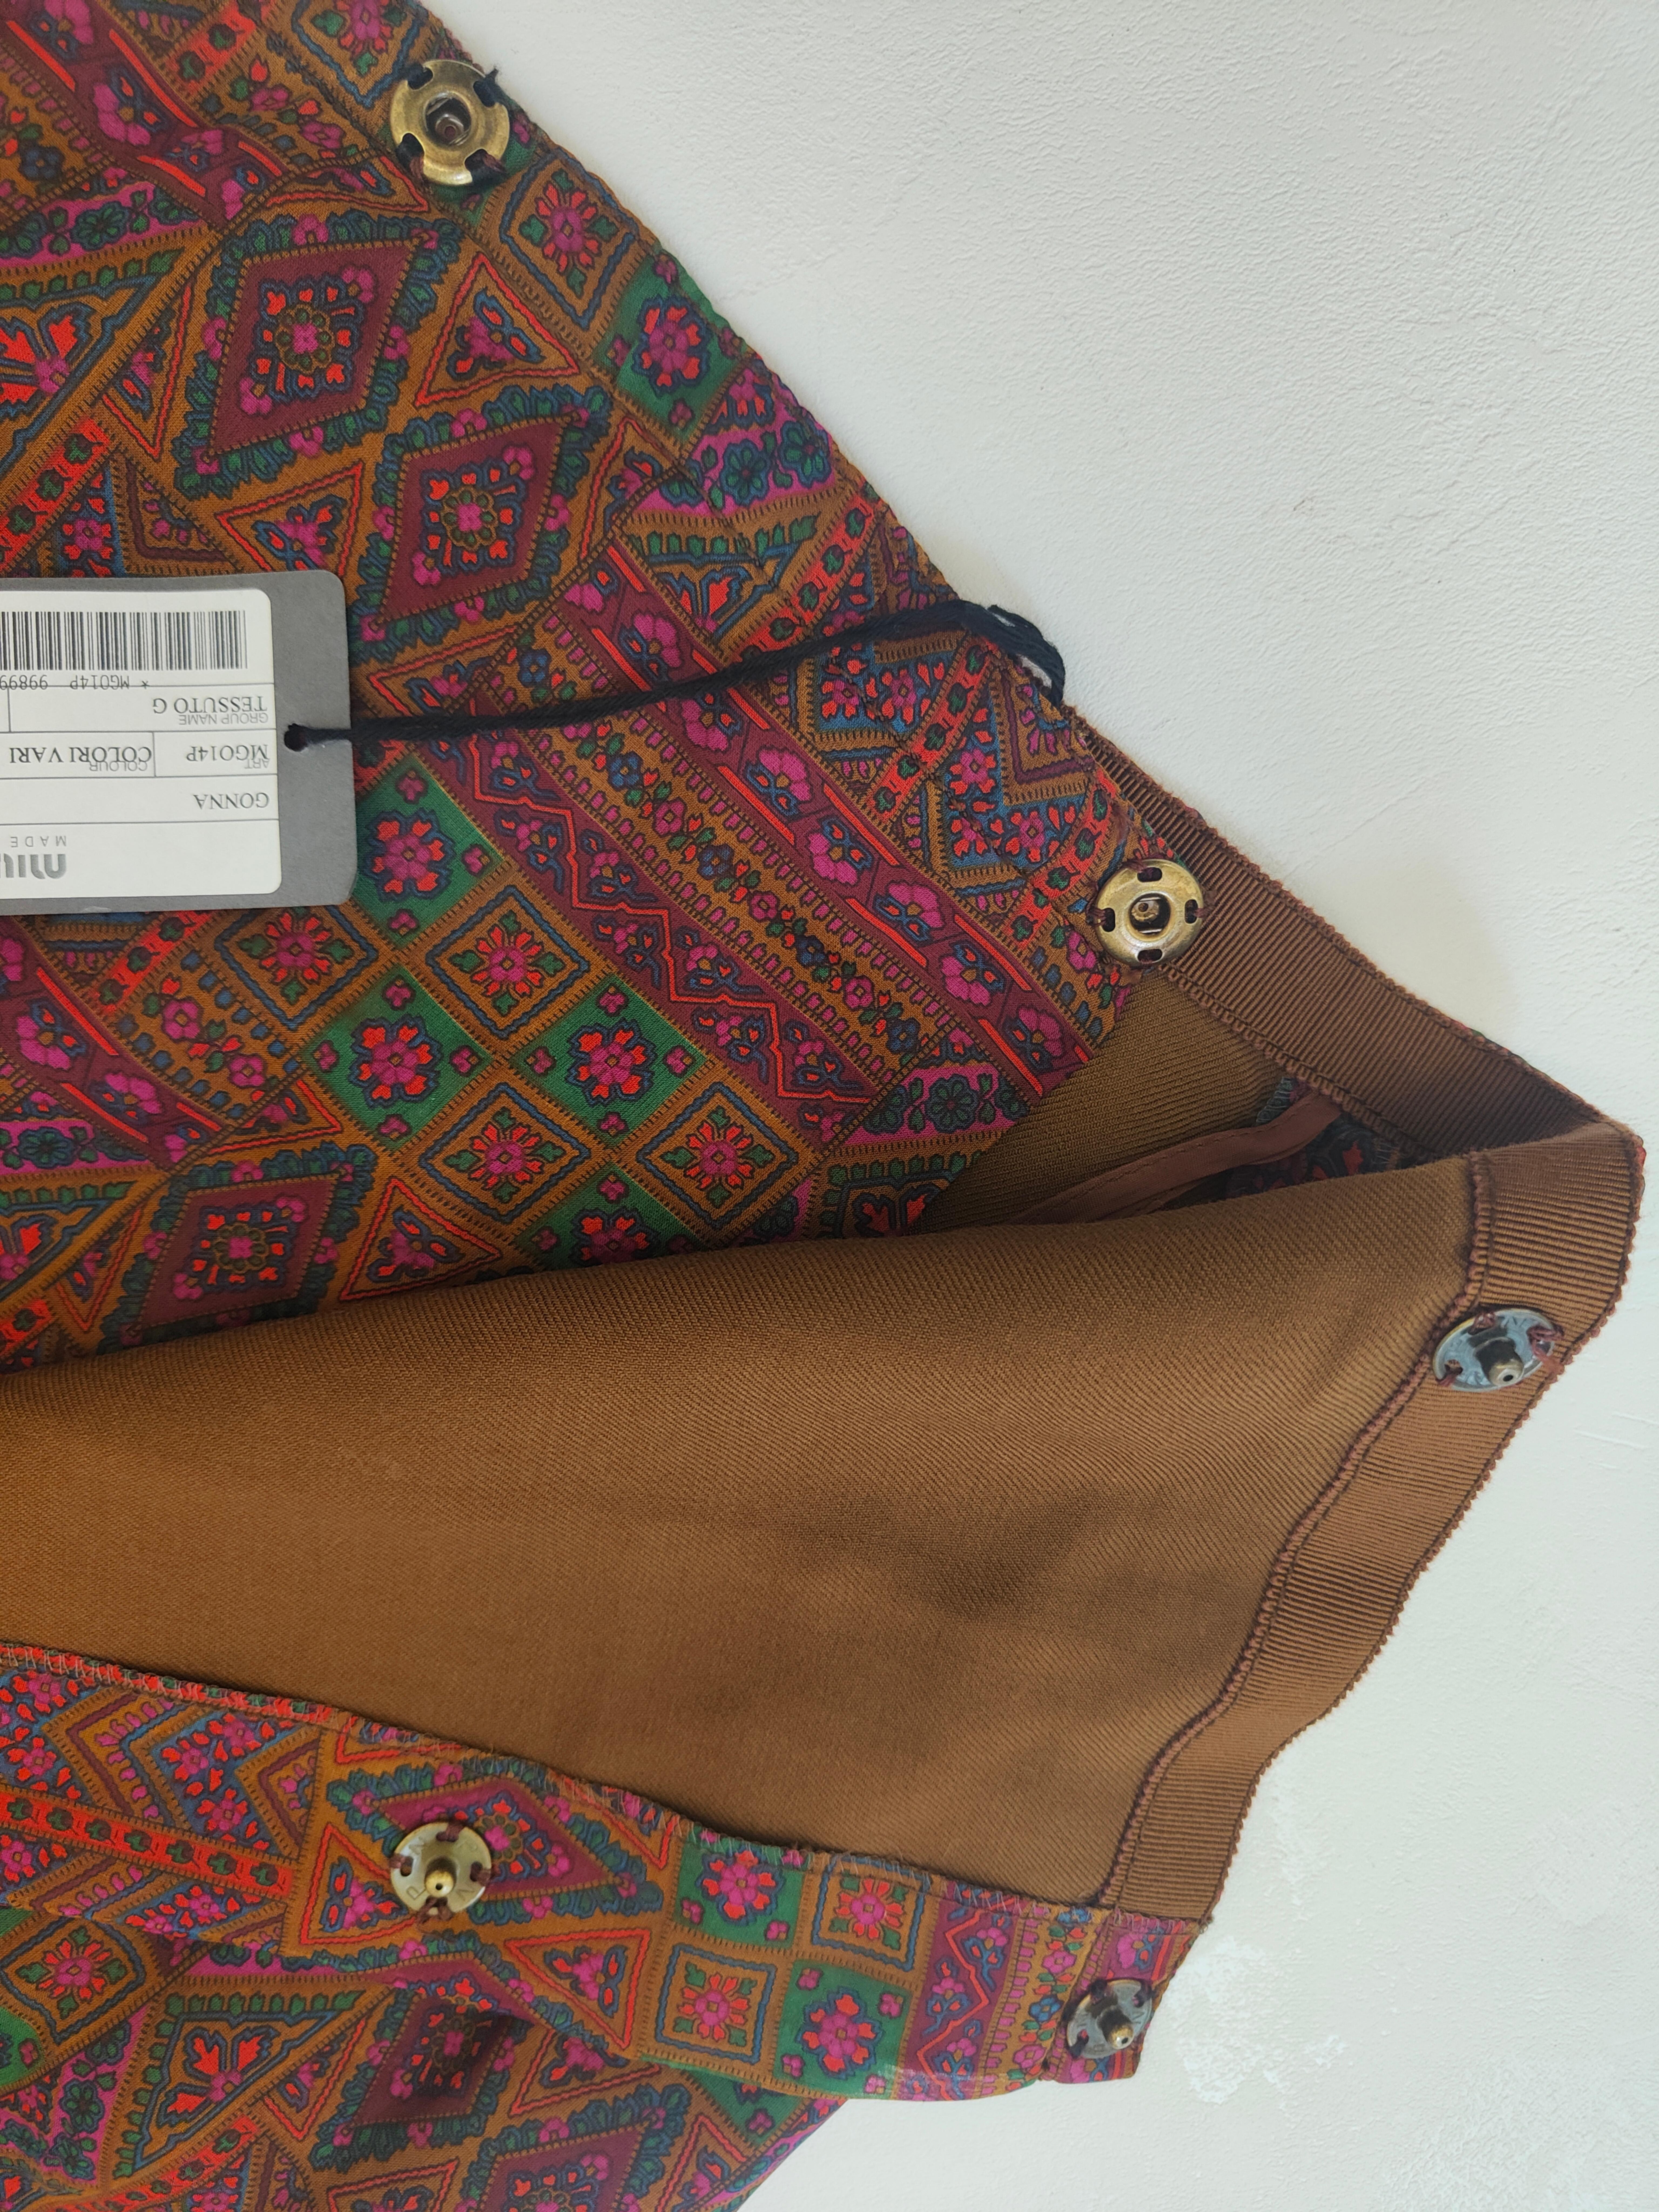 Miu Miu multicoloured cotton skirt
Size XS 
waist 62 cm
lenght 57 cm